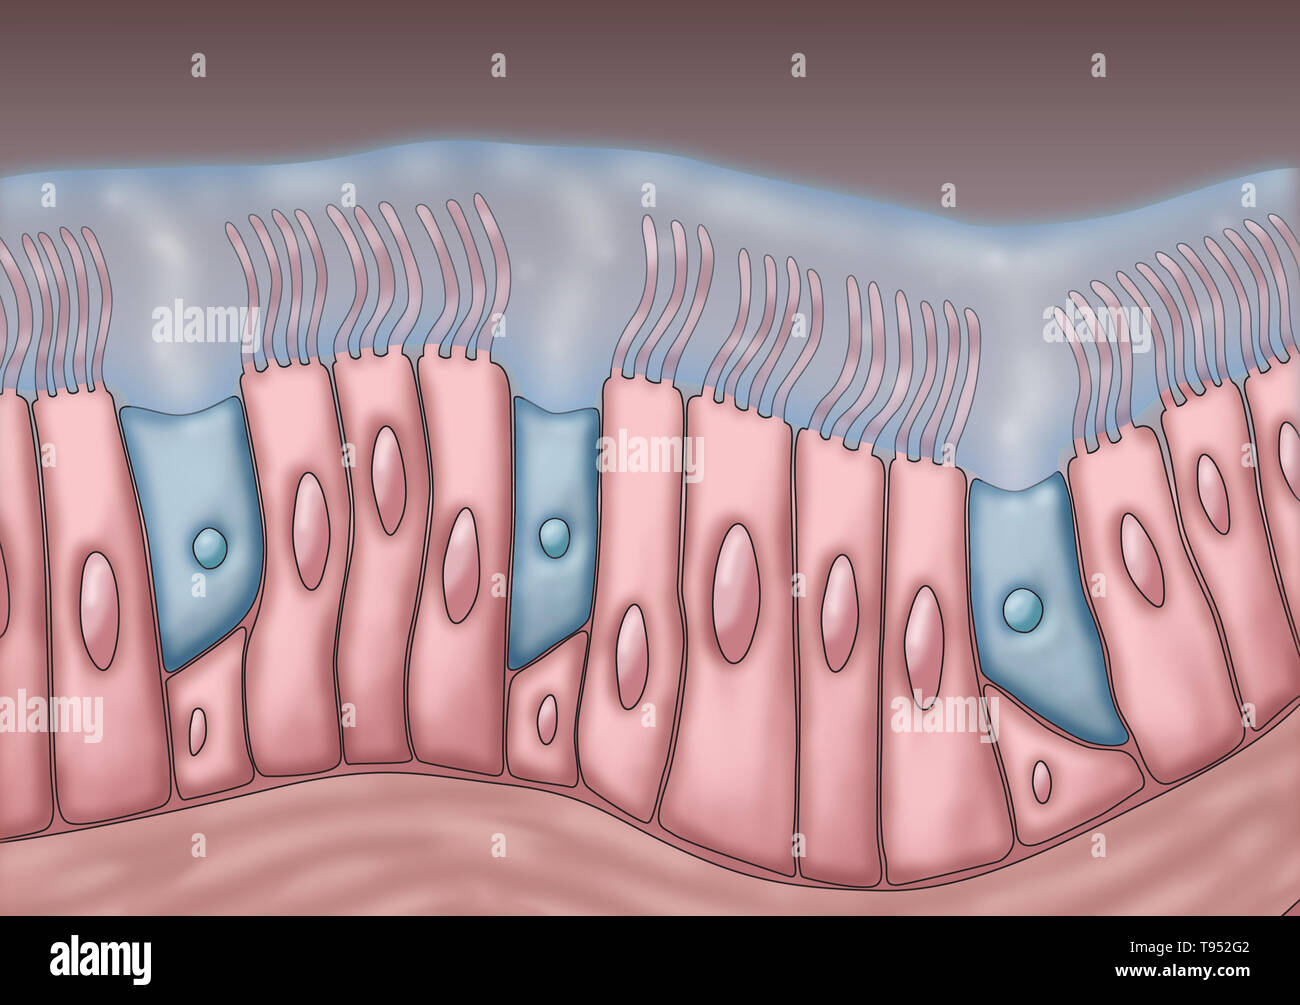 Ilustración médica representando cilia y moco. El rítmico movimiento hacia delante y hacia atrás de los cilios mueven el moco y las partículas atrapadas, tales como bacterias y virus, de los senos paranasales. Foto de stock